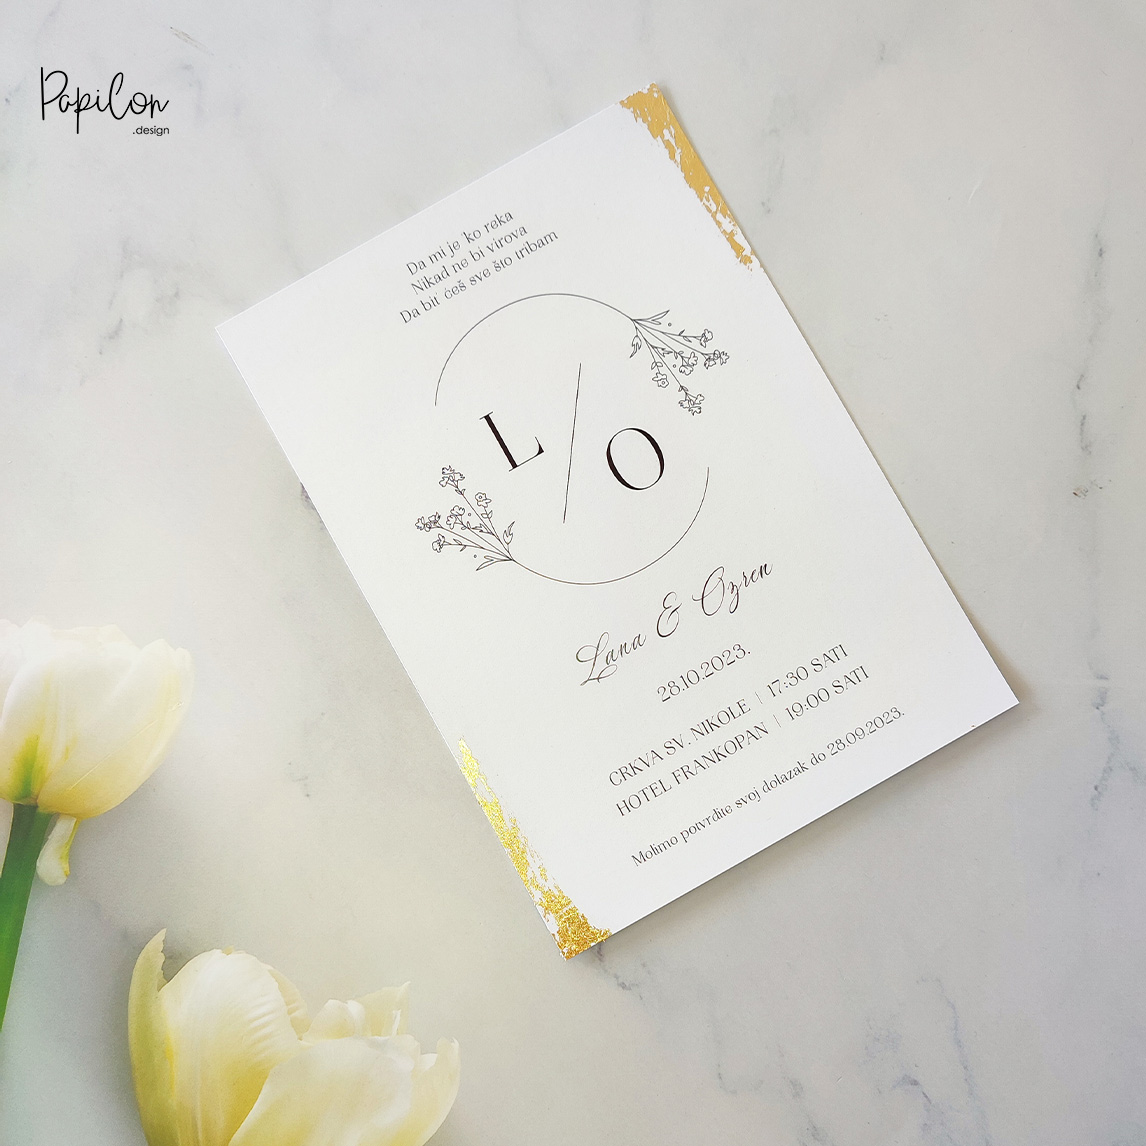 papilon design zagreb pozivnice za vjenčanje paus omot zlatni rub vosak pečat